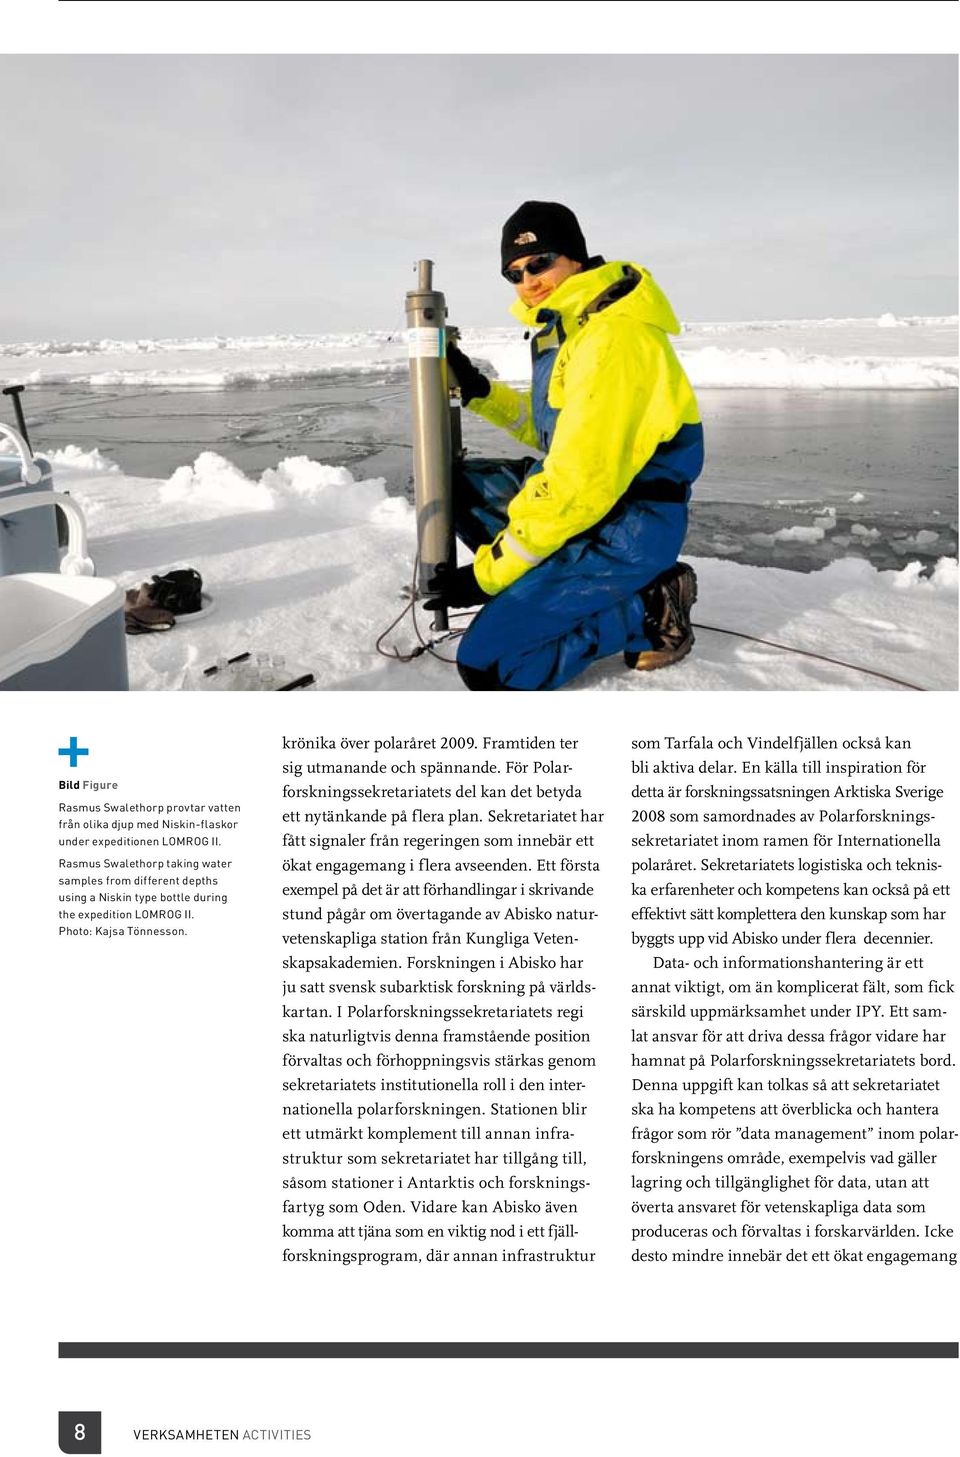 Framtiden ter sig utmanande och spännande. För Polarforskningssekretariatets del kan det betyda ett nytänkande på flera plan.